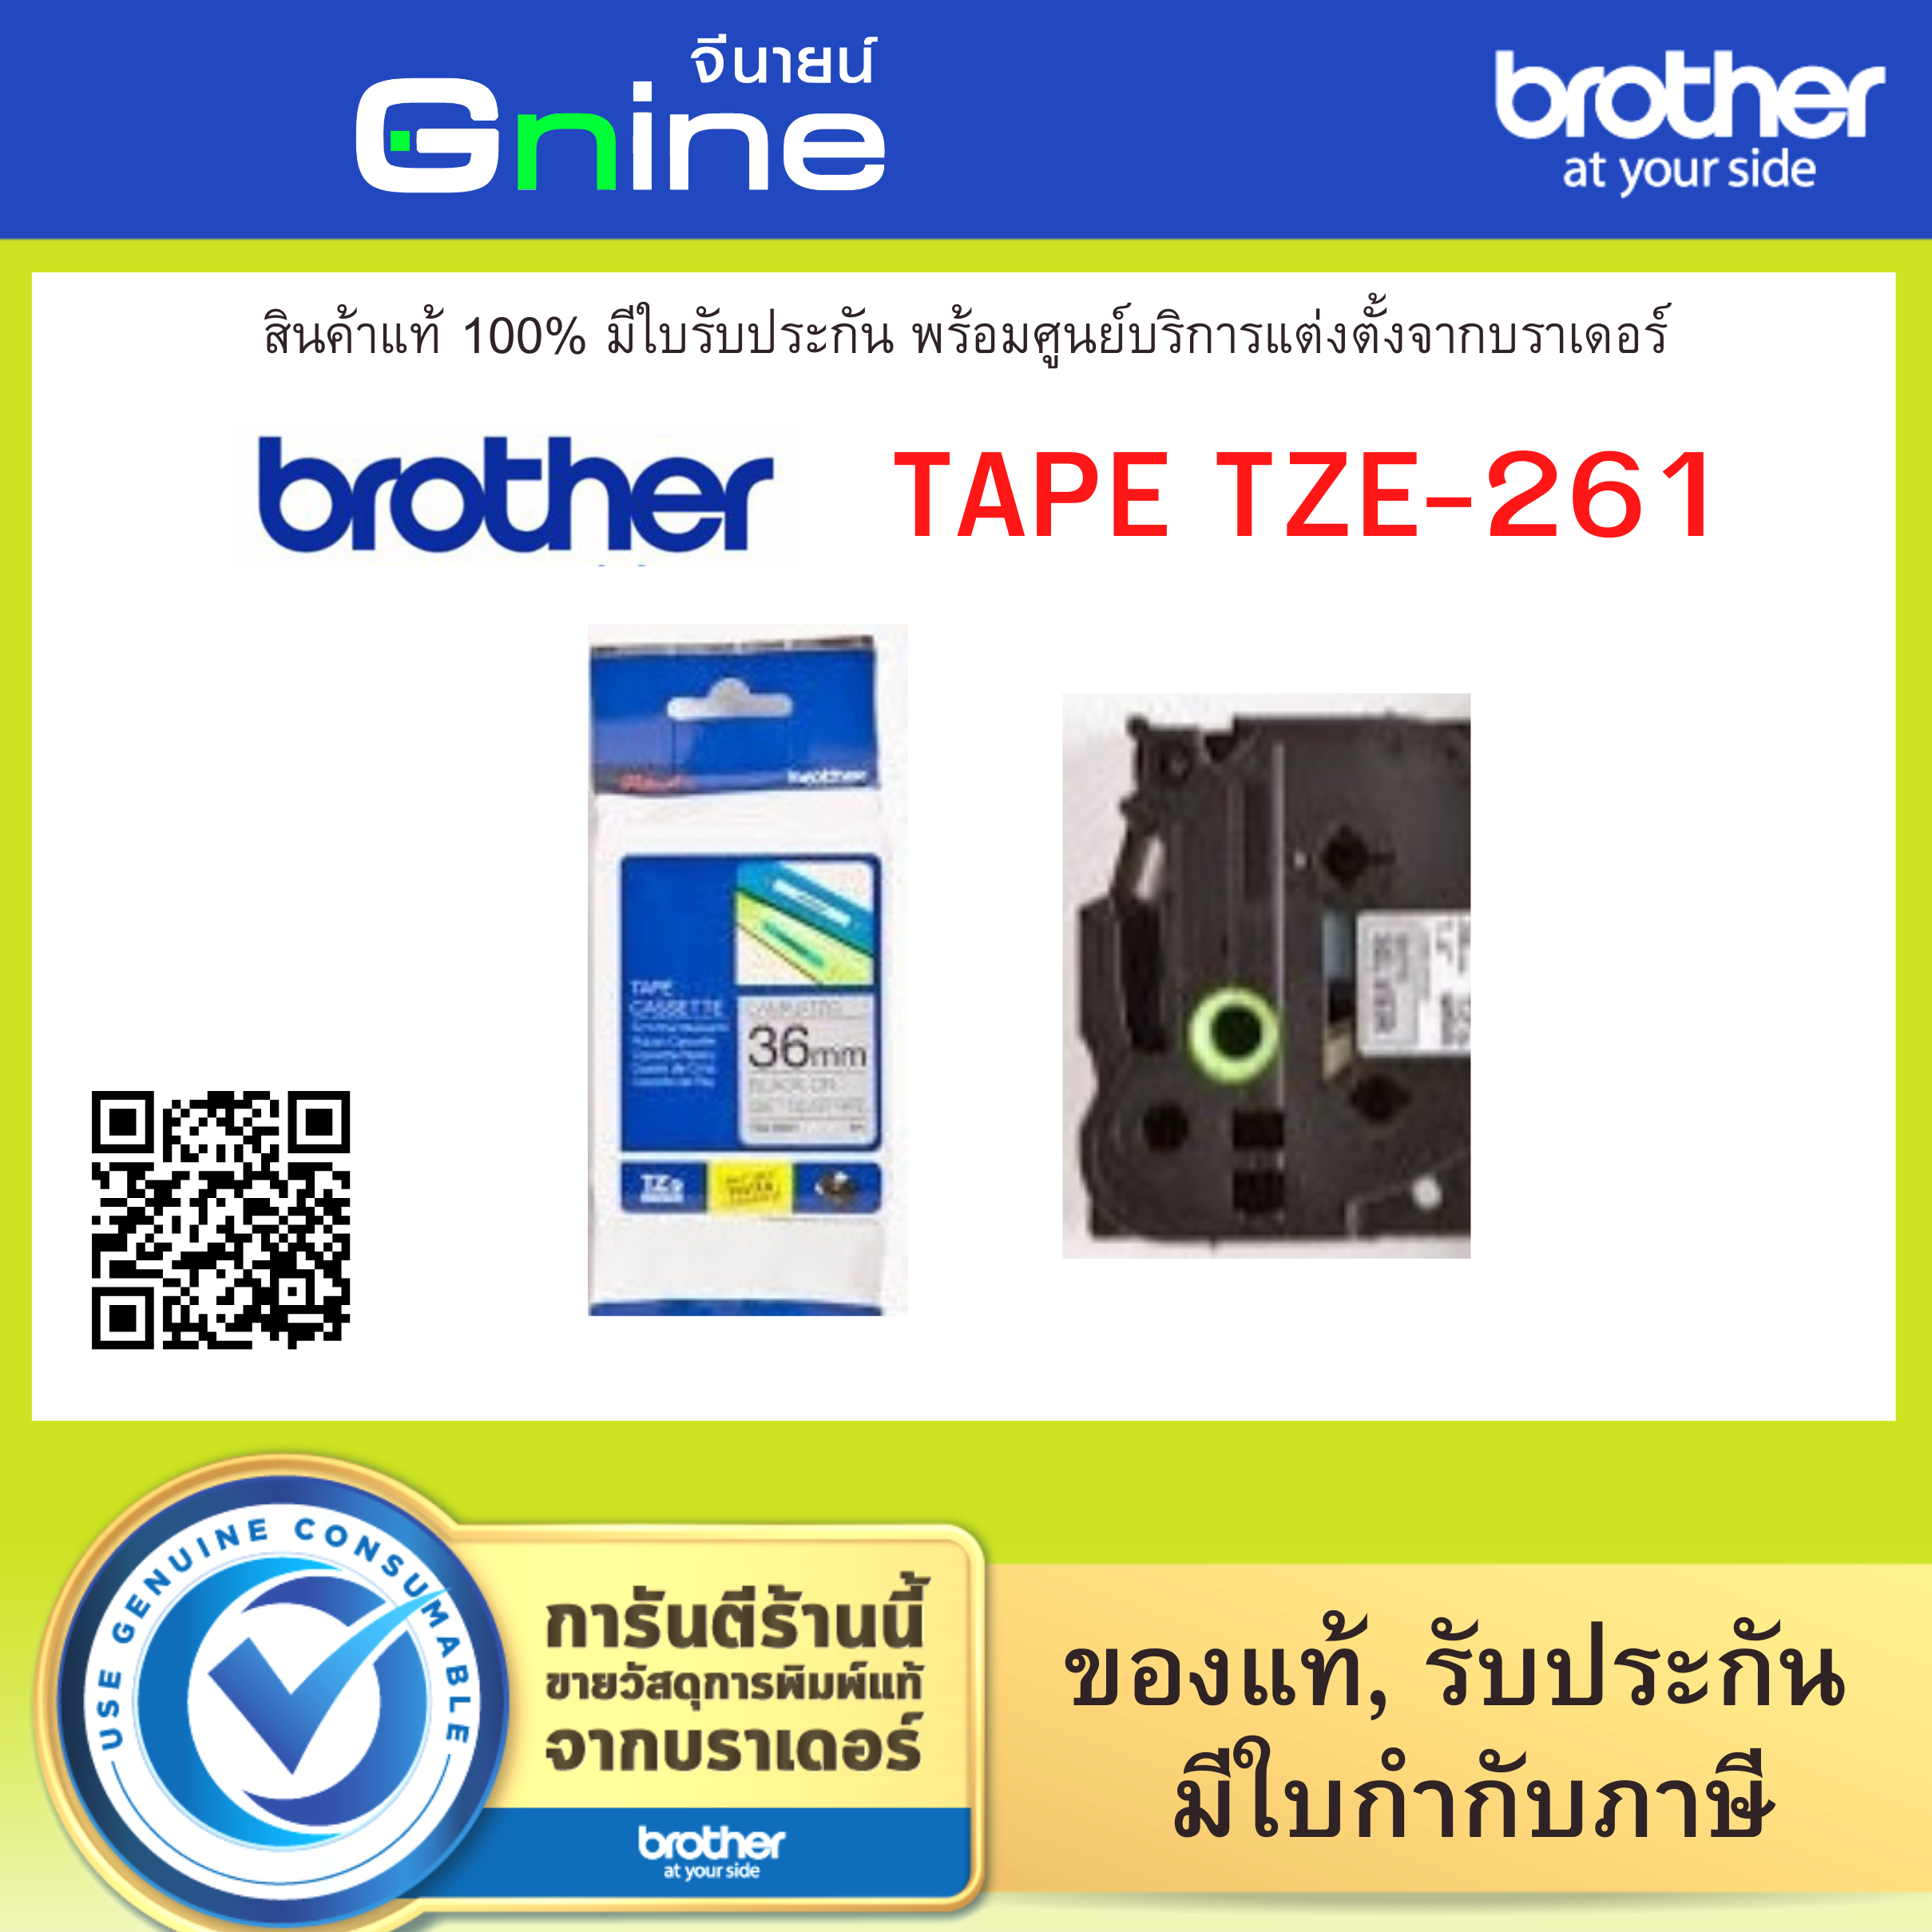 Brother Tape TZE-261 (เทปพิมพ์อักษรบราเดอร์ขนาด 36มม.)